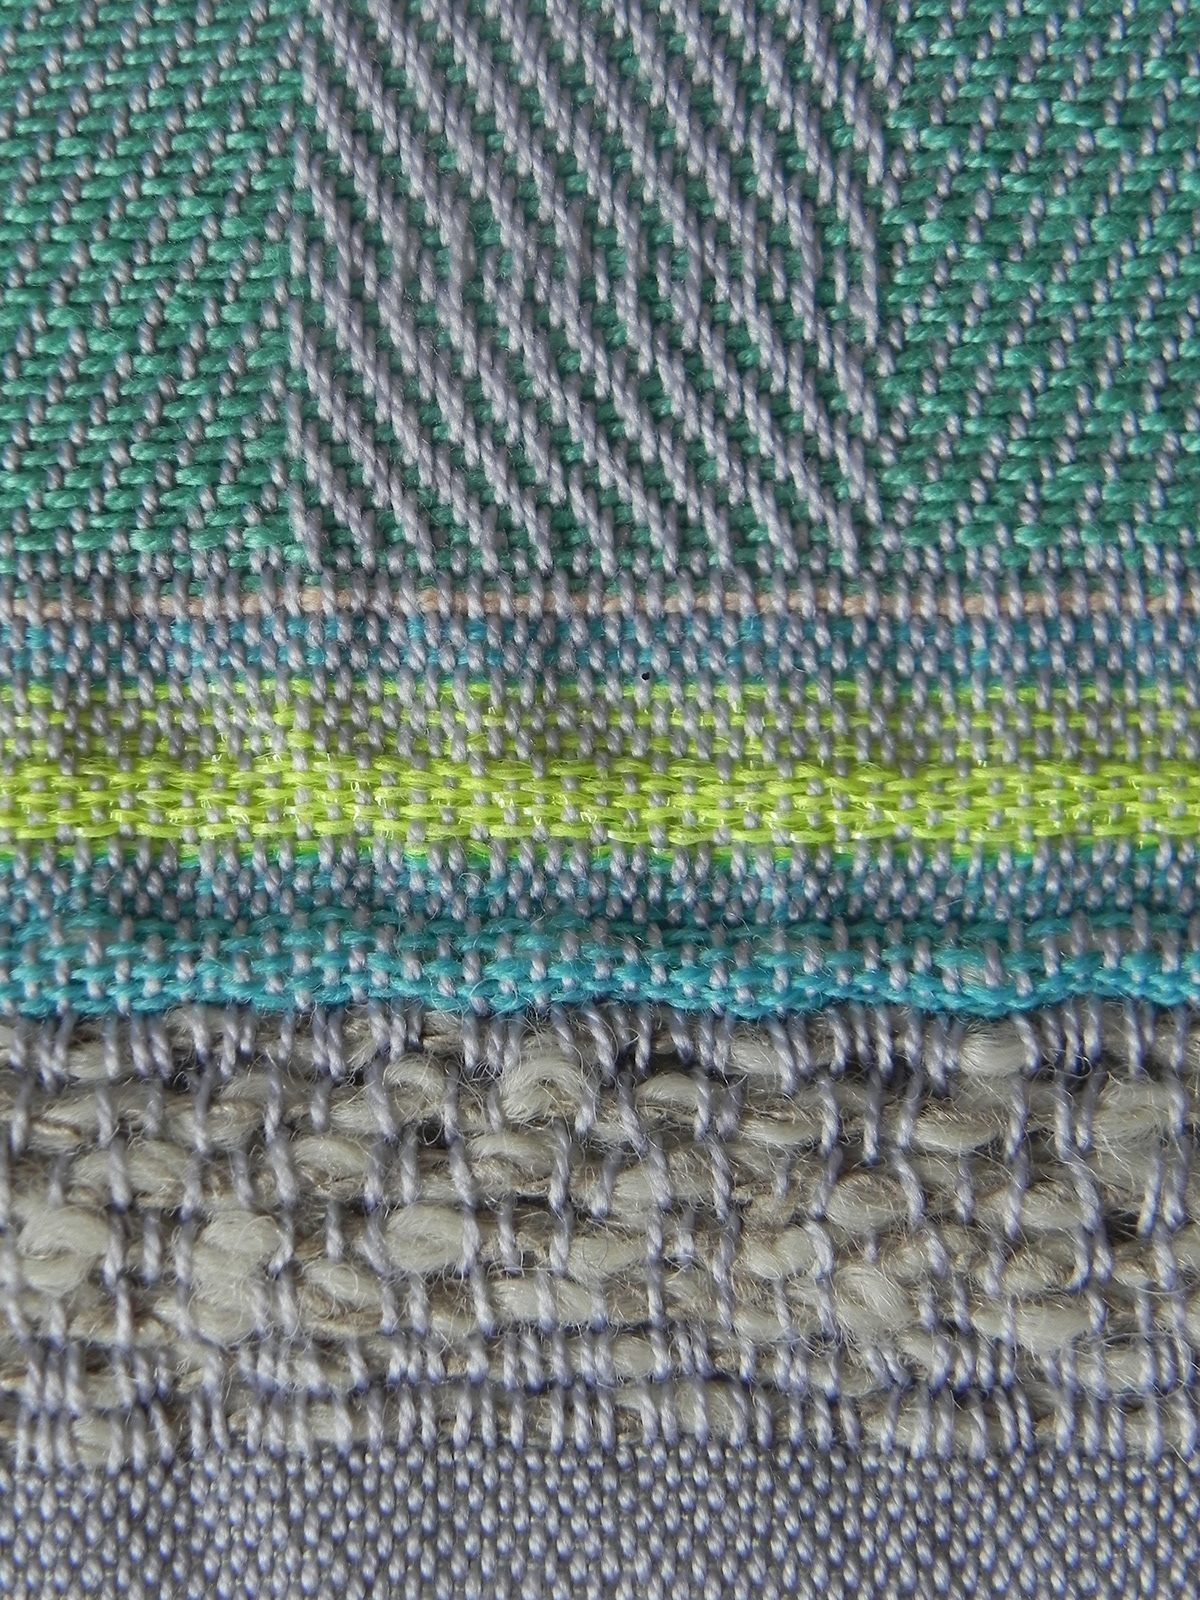 Woven Textiles neon woven textiles design